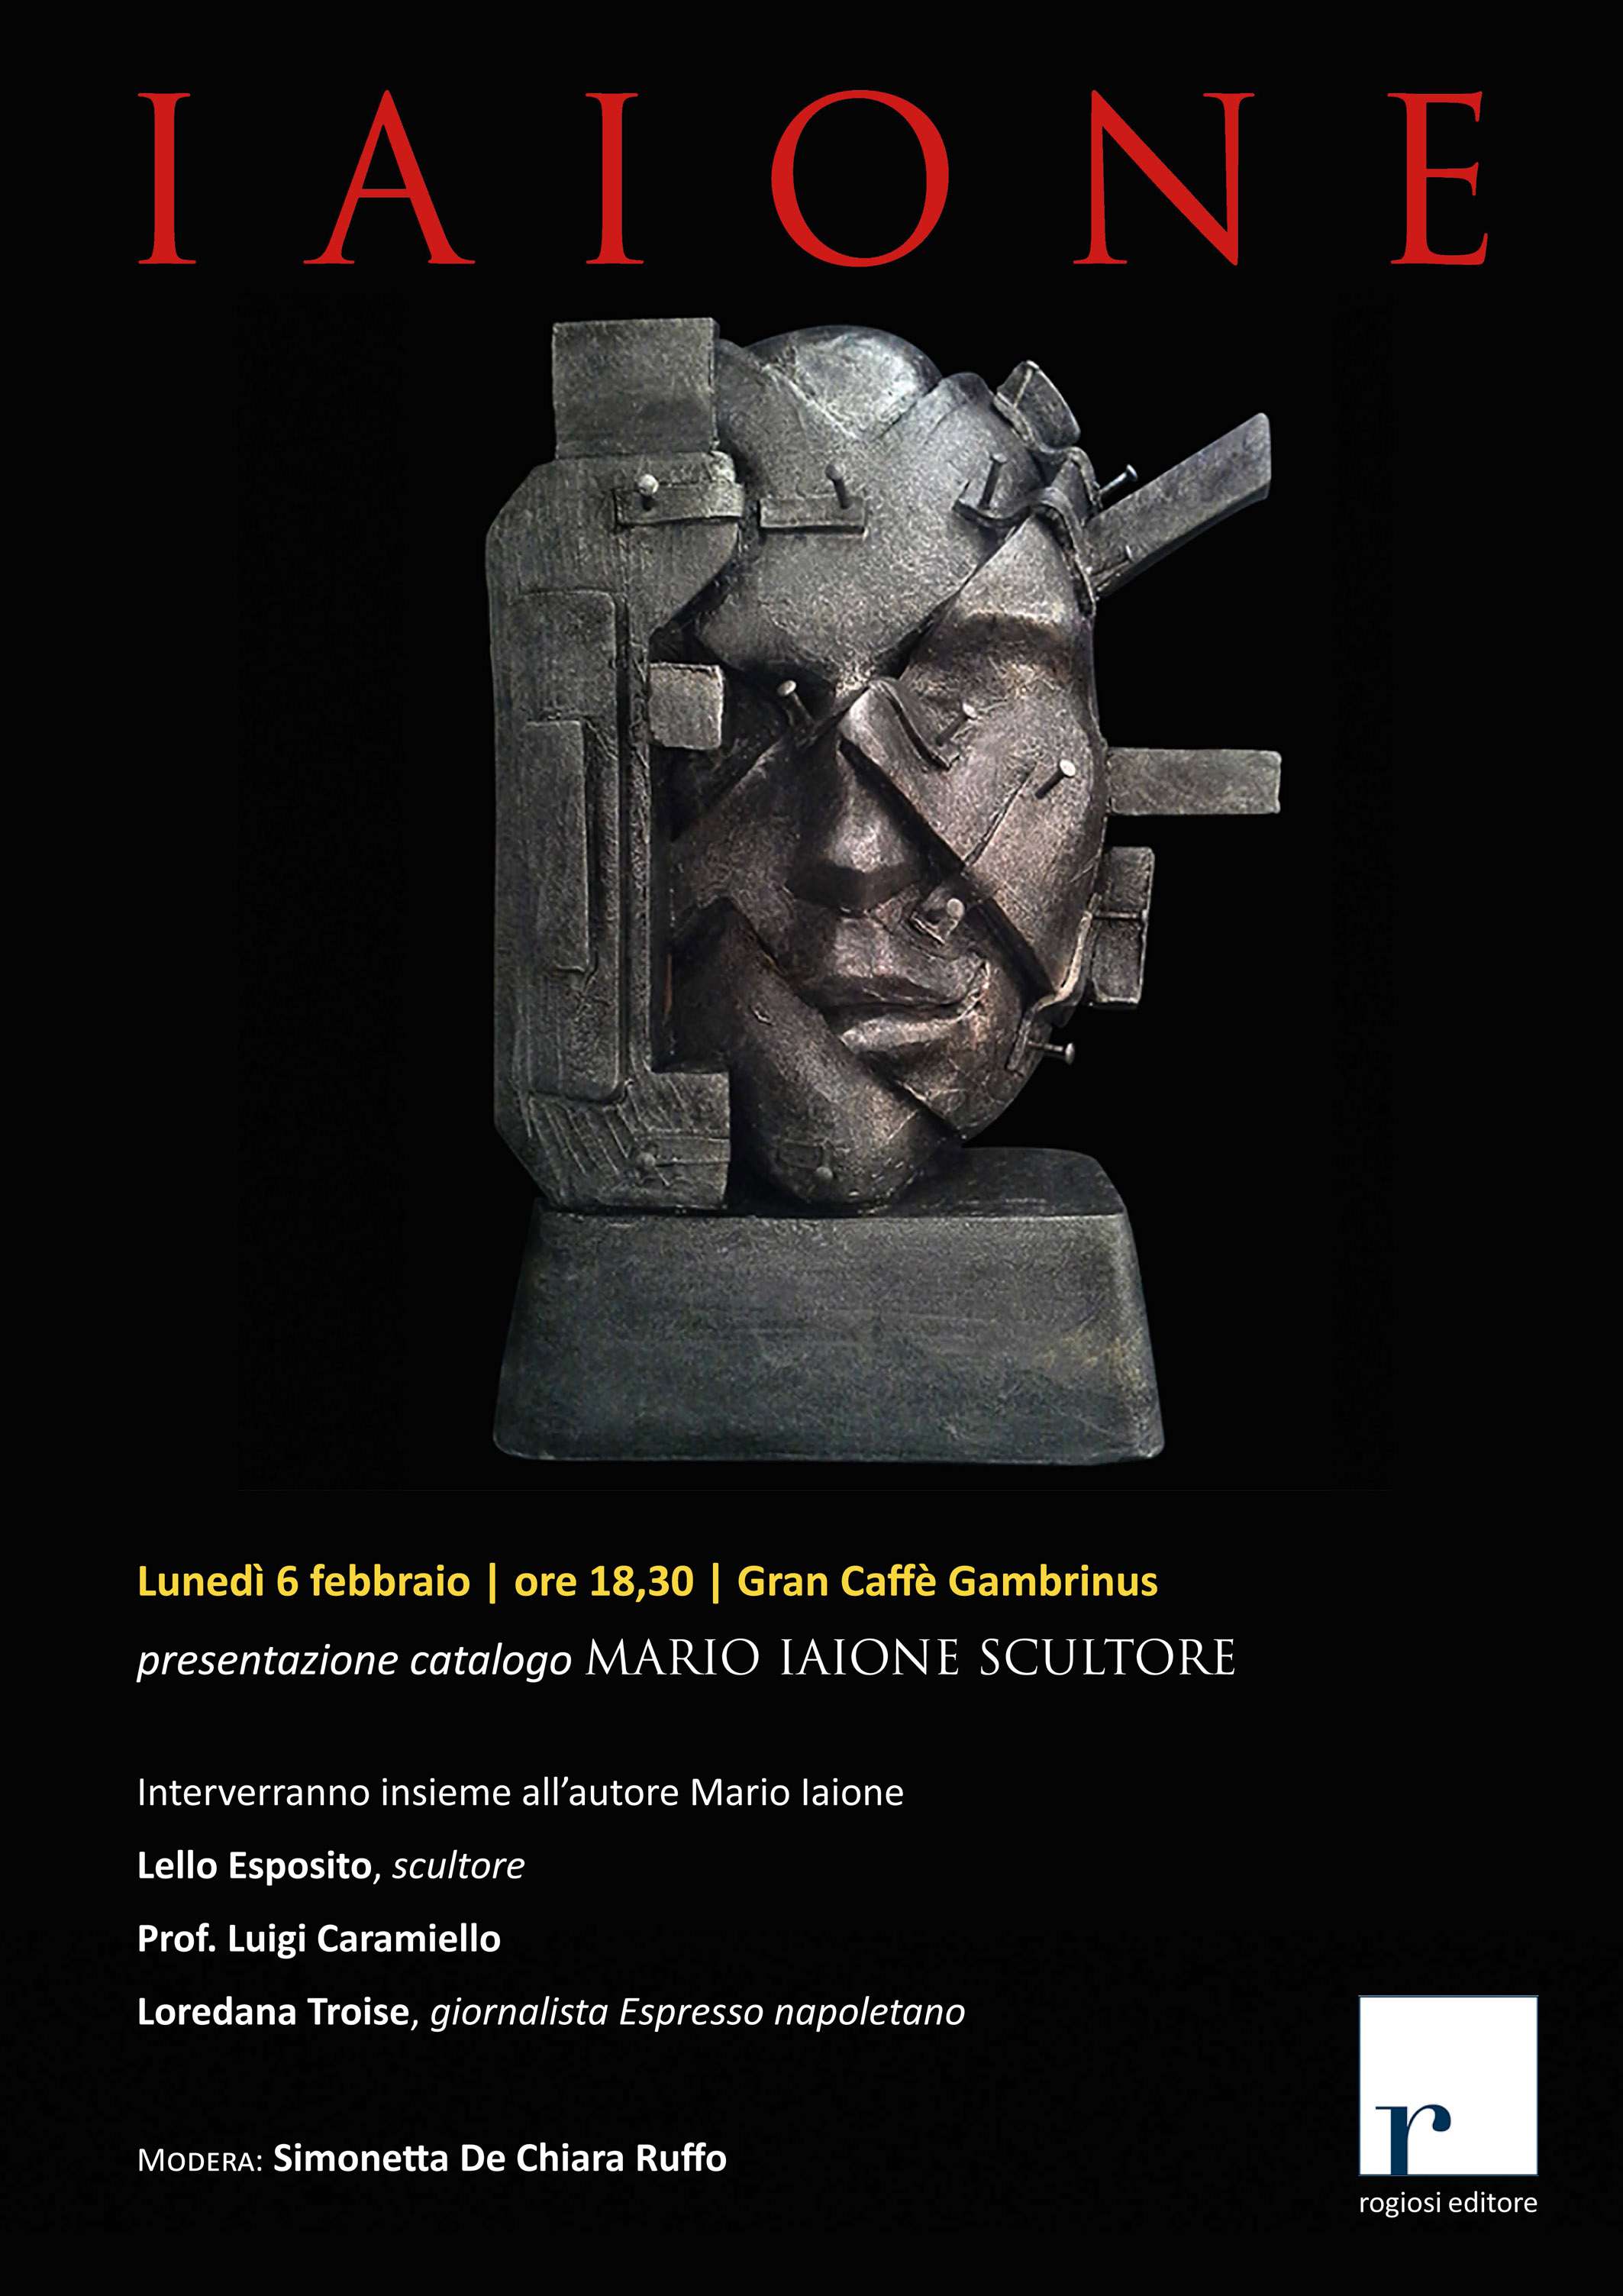 Il catalogo di Mario Iaione scultore